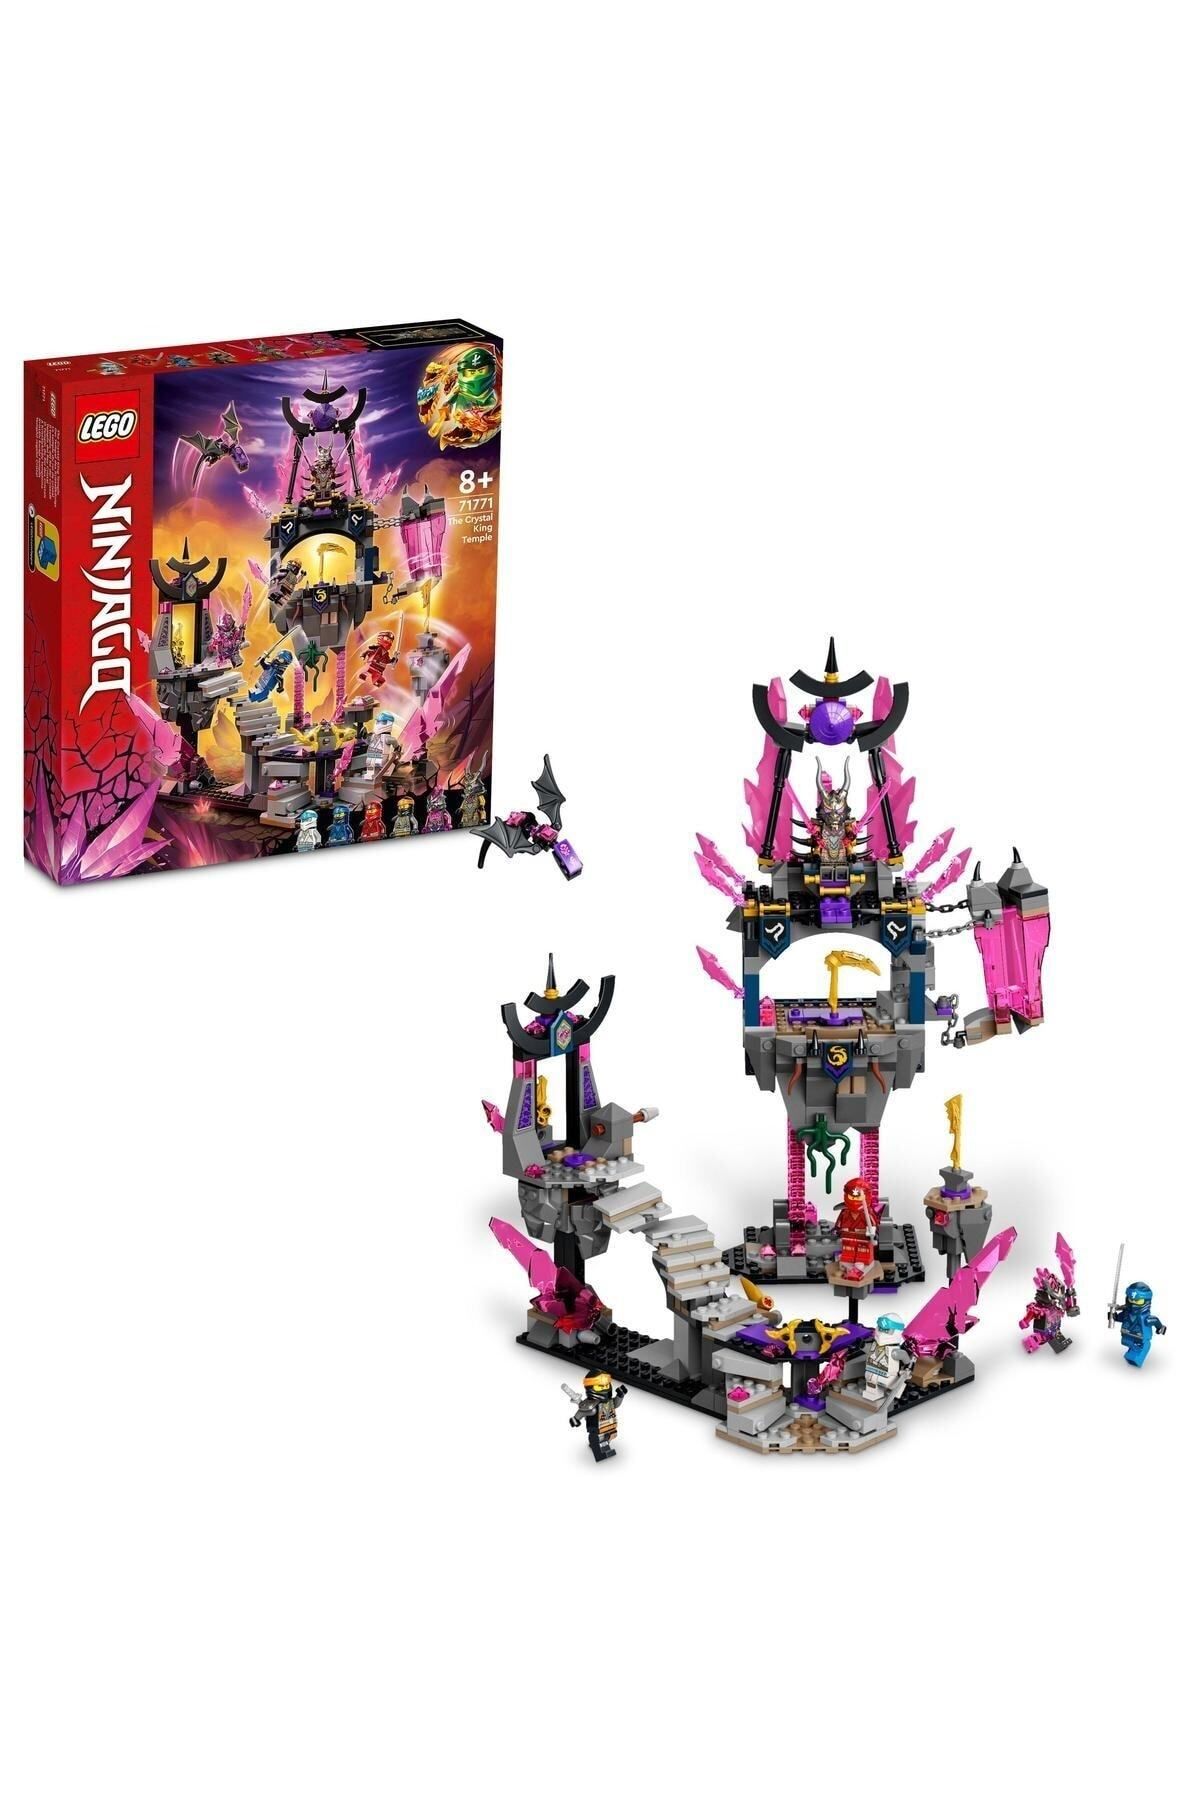 LEGO ® NINJAGO® Kristal Kral Tapınağı 71771 - 8 Yaş ve Üzeri Çocuklar için Yapım Seti (703 Parça)